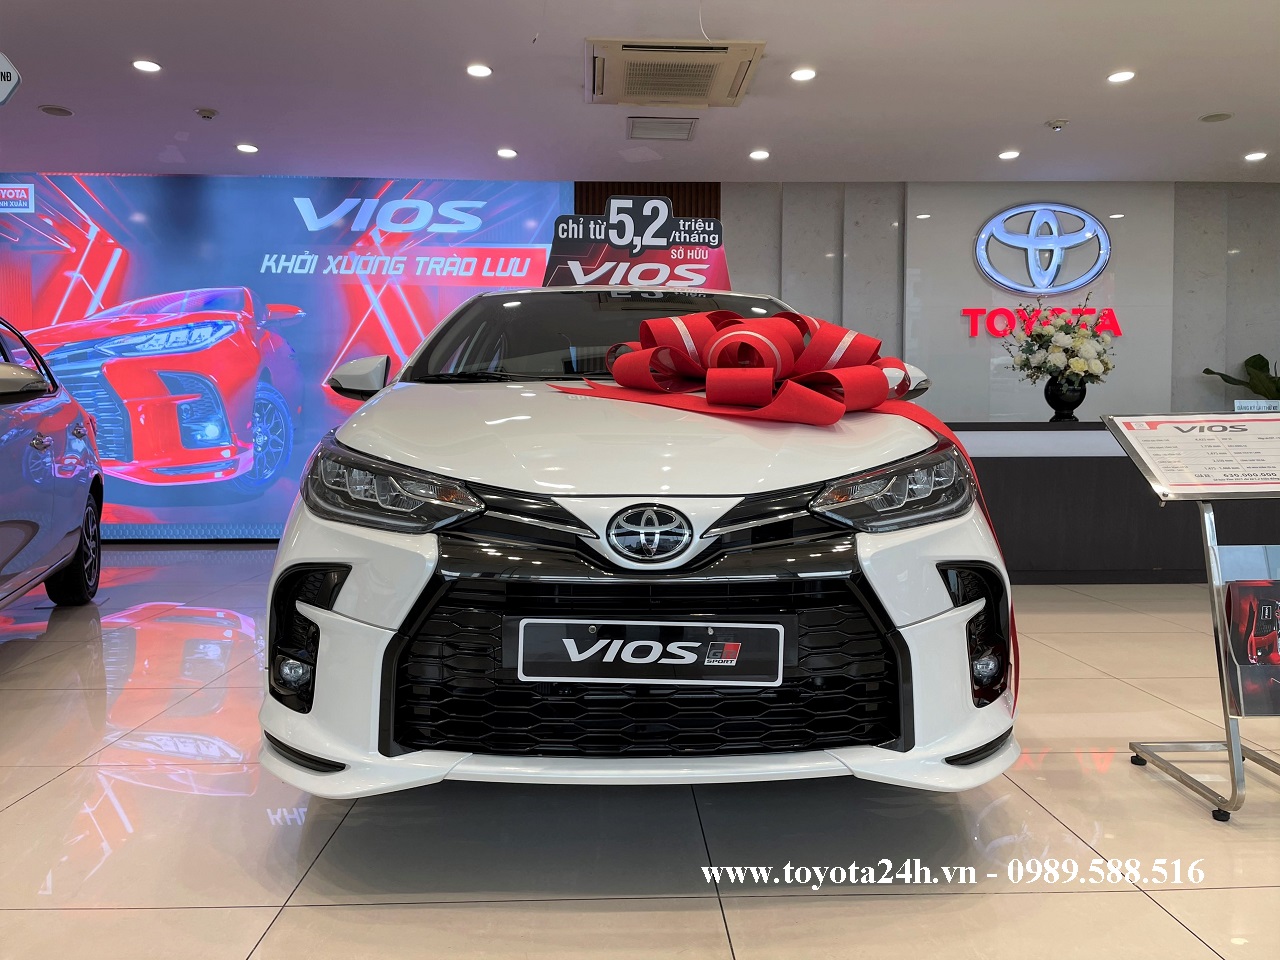 Sự tinh tế trong kiểu dáng và màu sắc của Toyota Vios 1.5GR-S 2022 sẽ mang đến cho bạn một trải nghiệm hoàn toàn mới. Hãy tham gia cùng chúng tôi và khám phá bảng giá xe cũng như hình ảnh đầy ấn tượng.